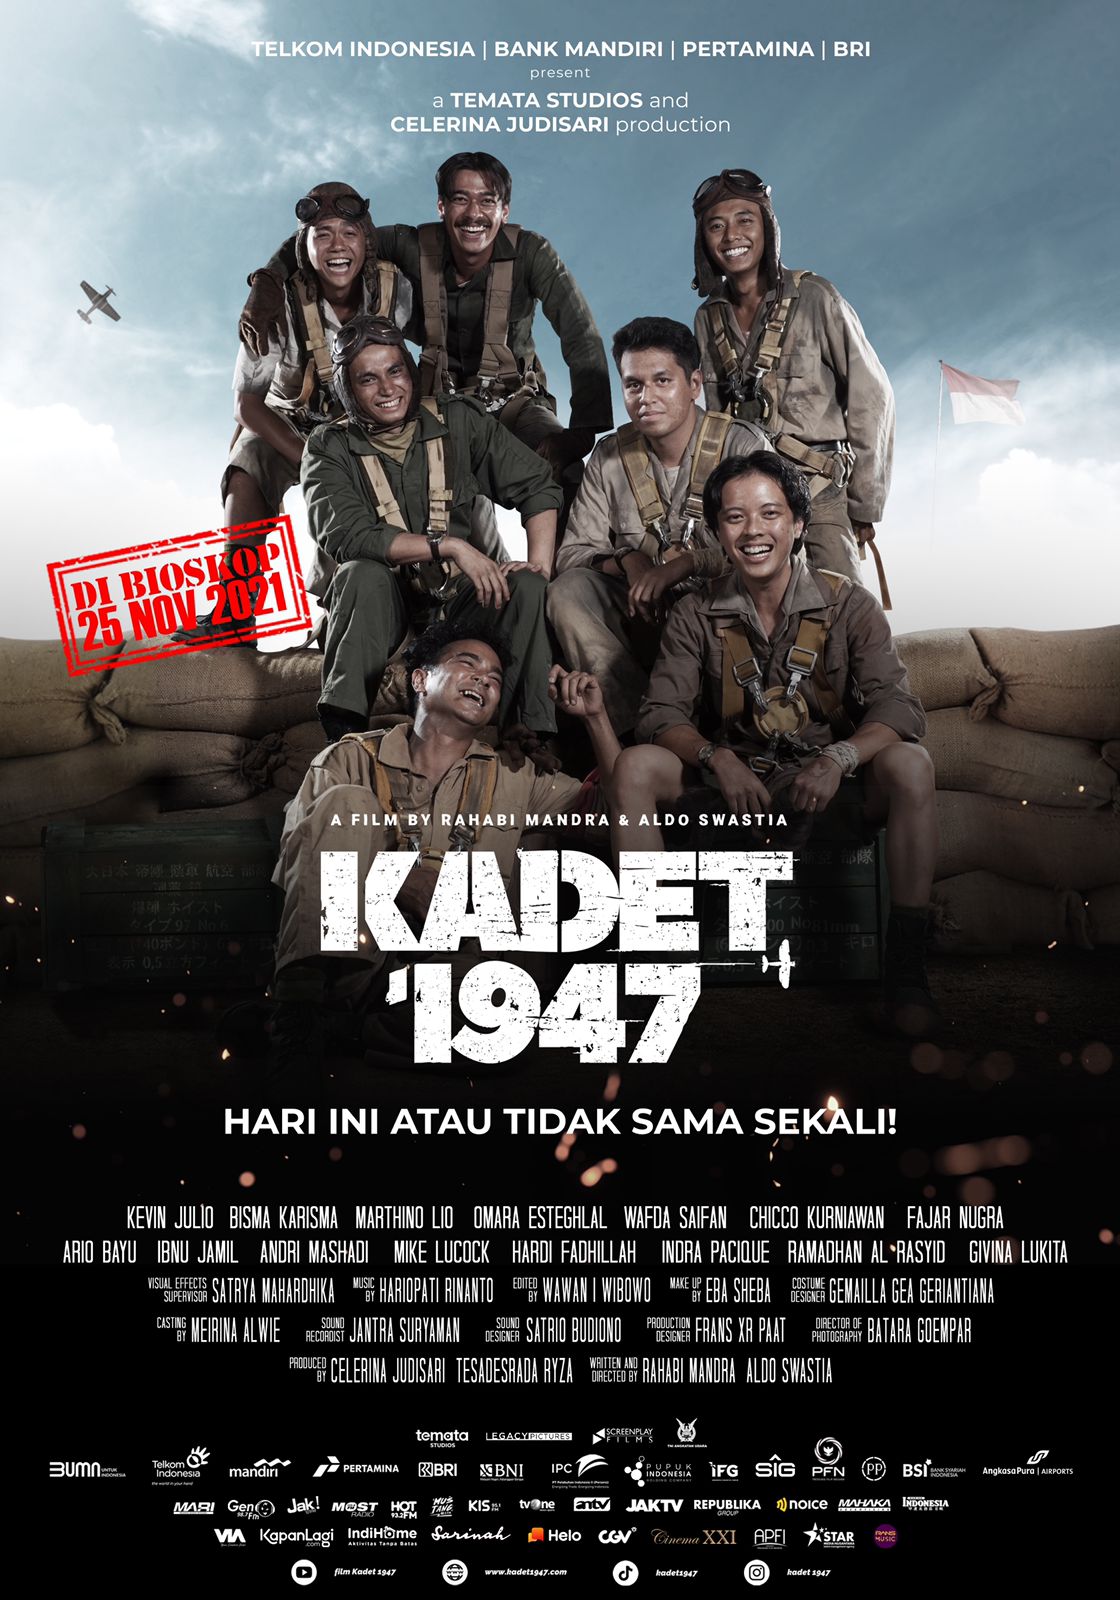 KADET 1947 (2021) คาเดท 1947